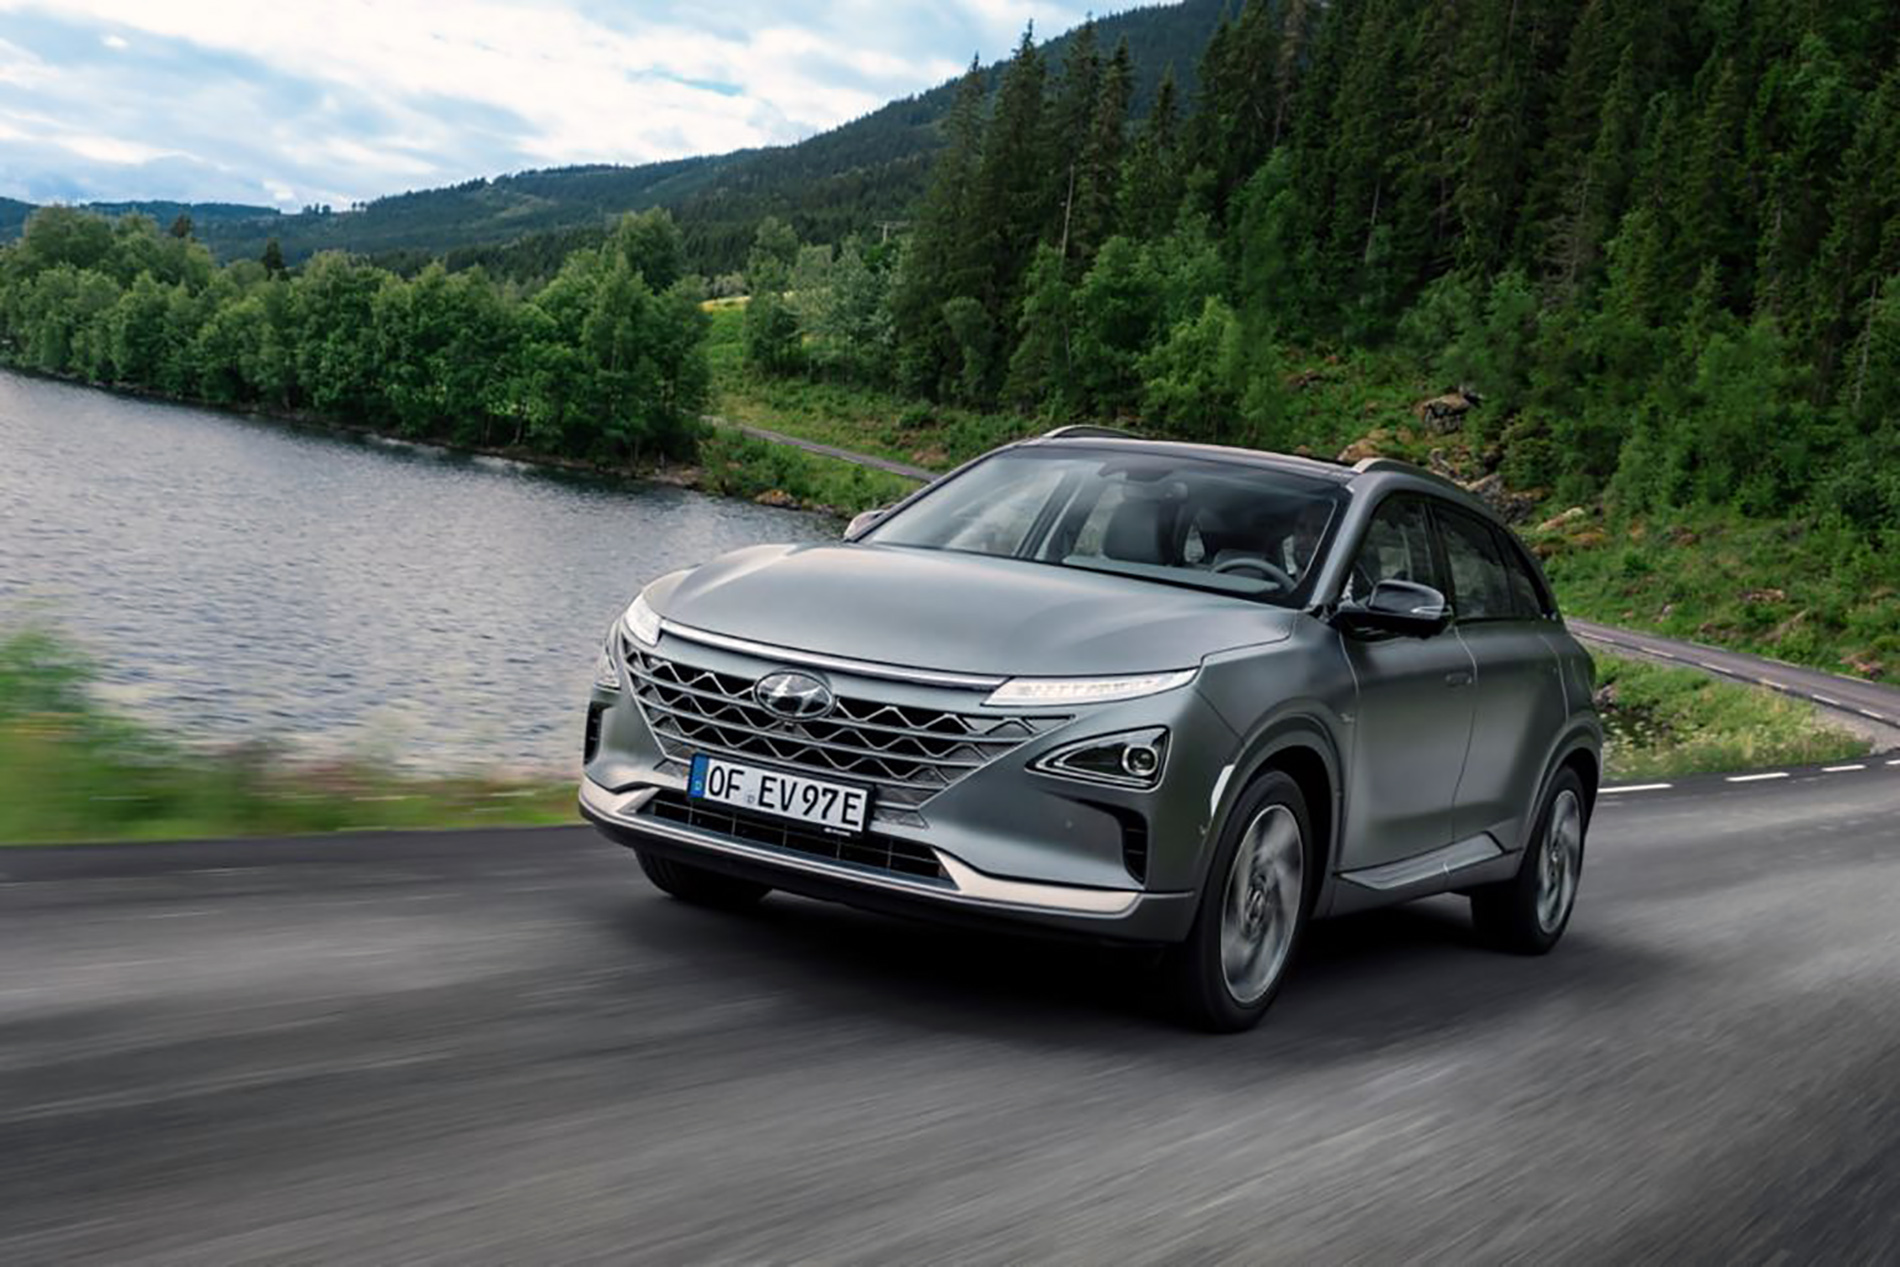 Sprzedaż Hyundaia NEXO w Europie przekroczyła liczbę 1000 egzemplarzy